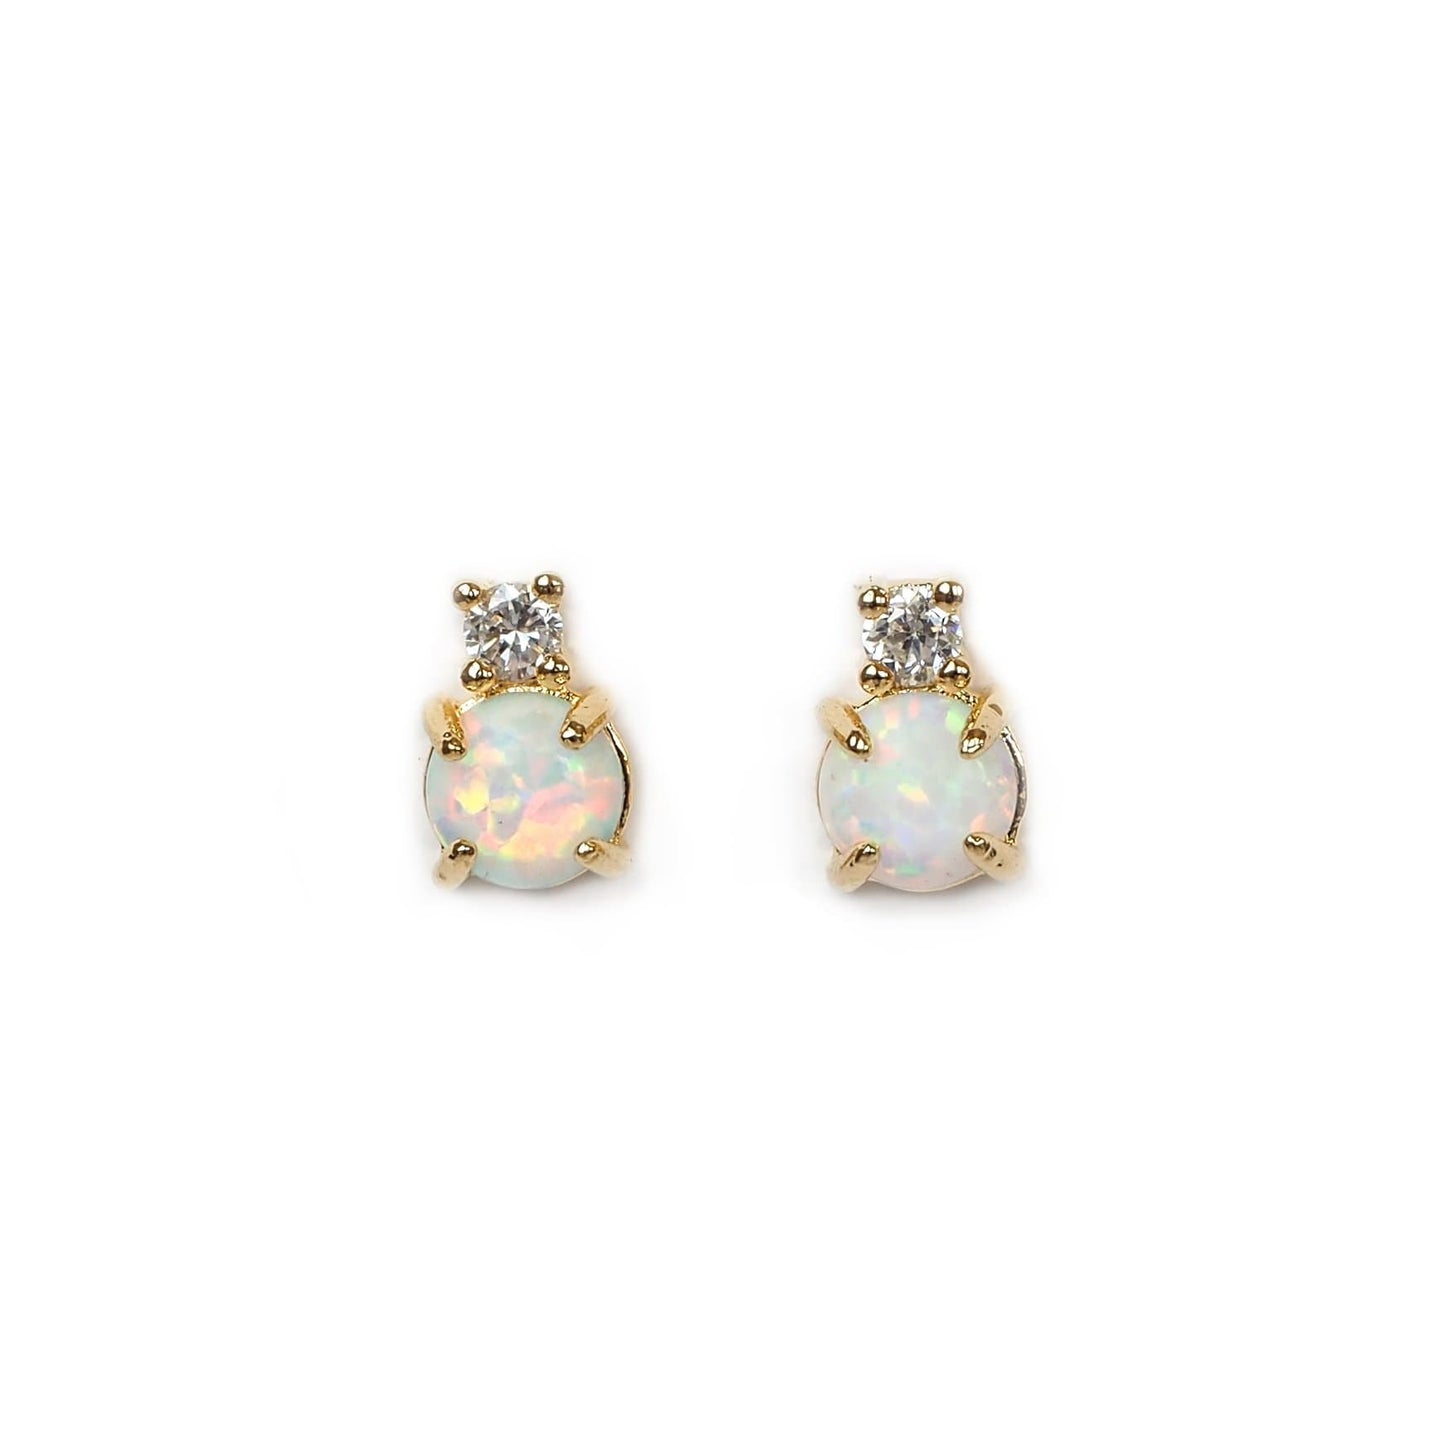  Opal CZ Stud Earrings, Earrings, adorn512, adorn512